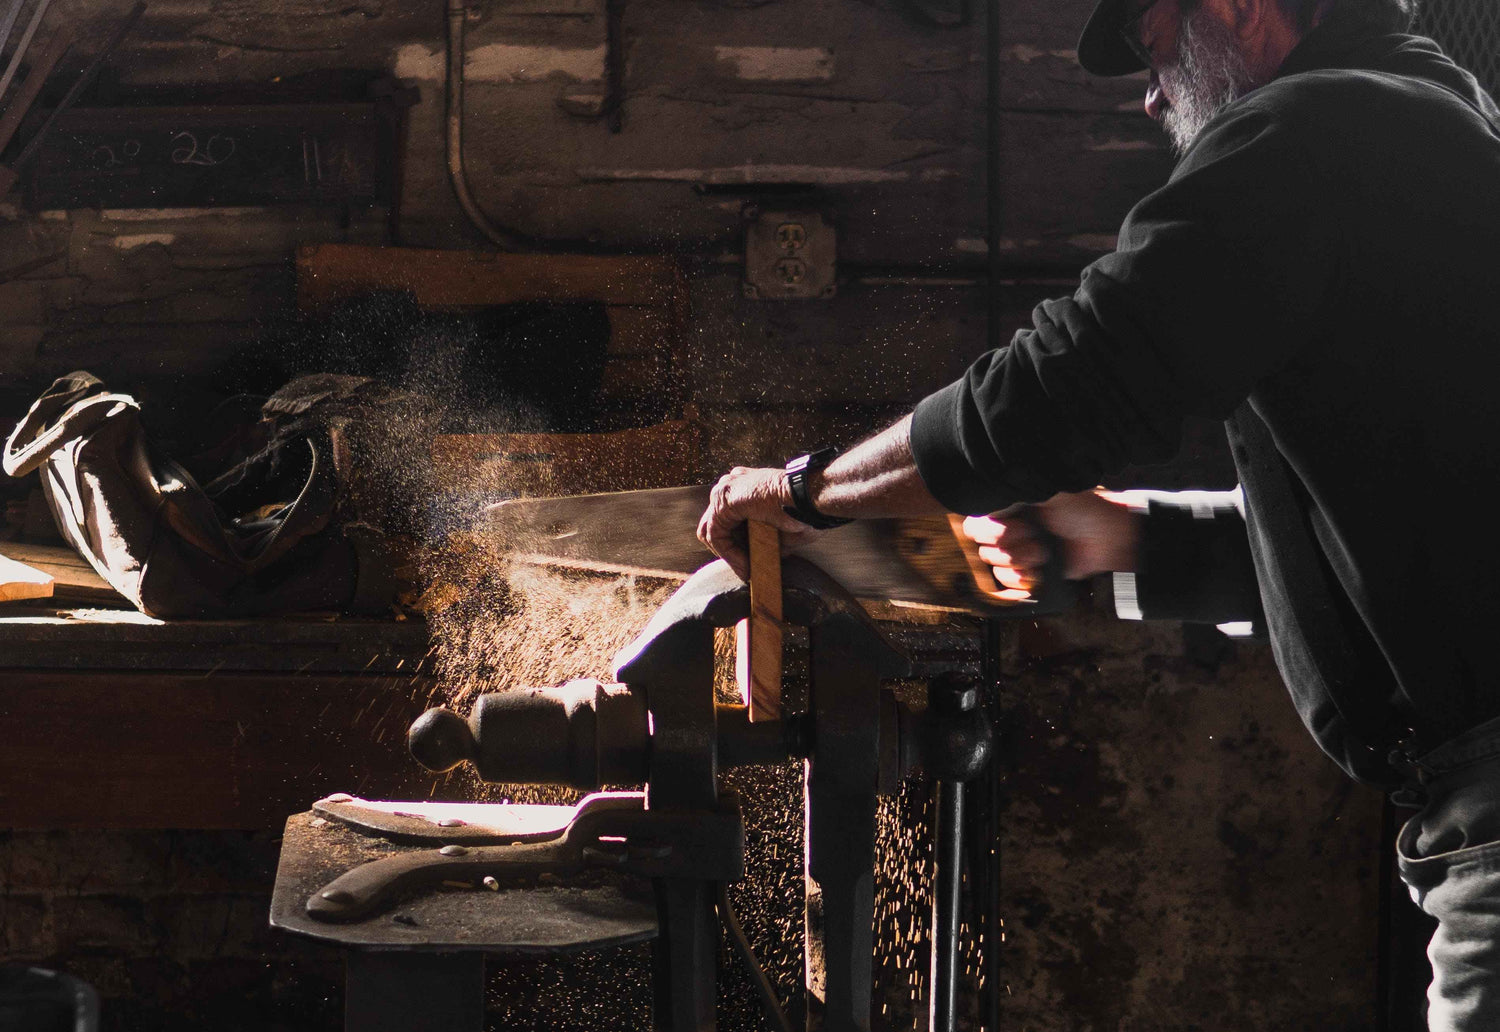 Mann der in einer Werkstatt Holz mit Handsäge sägt und dabei jede Menge Späne verursacht